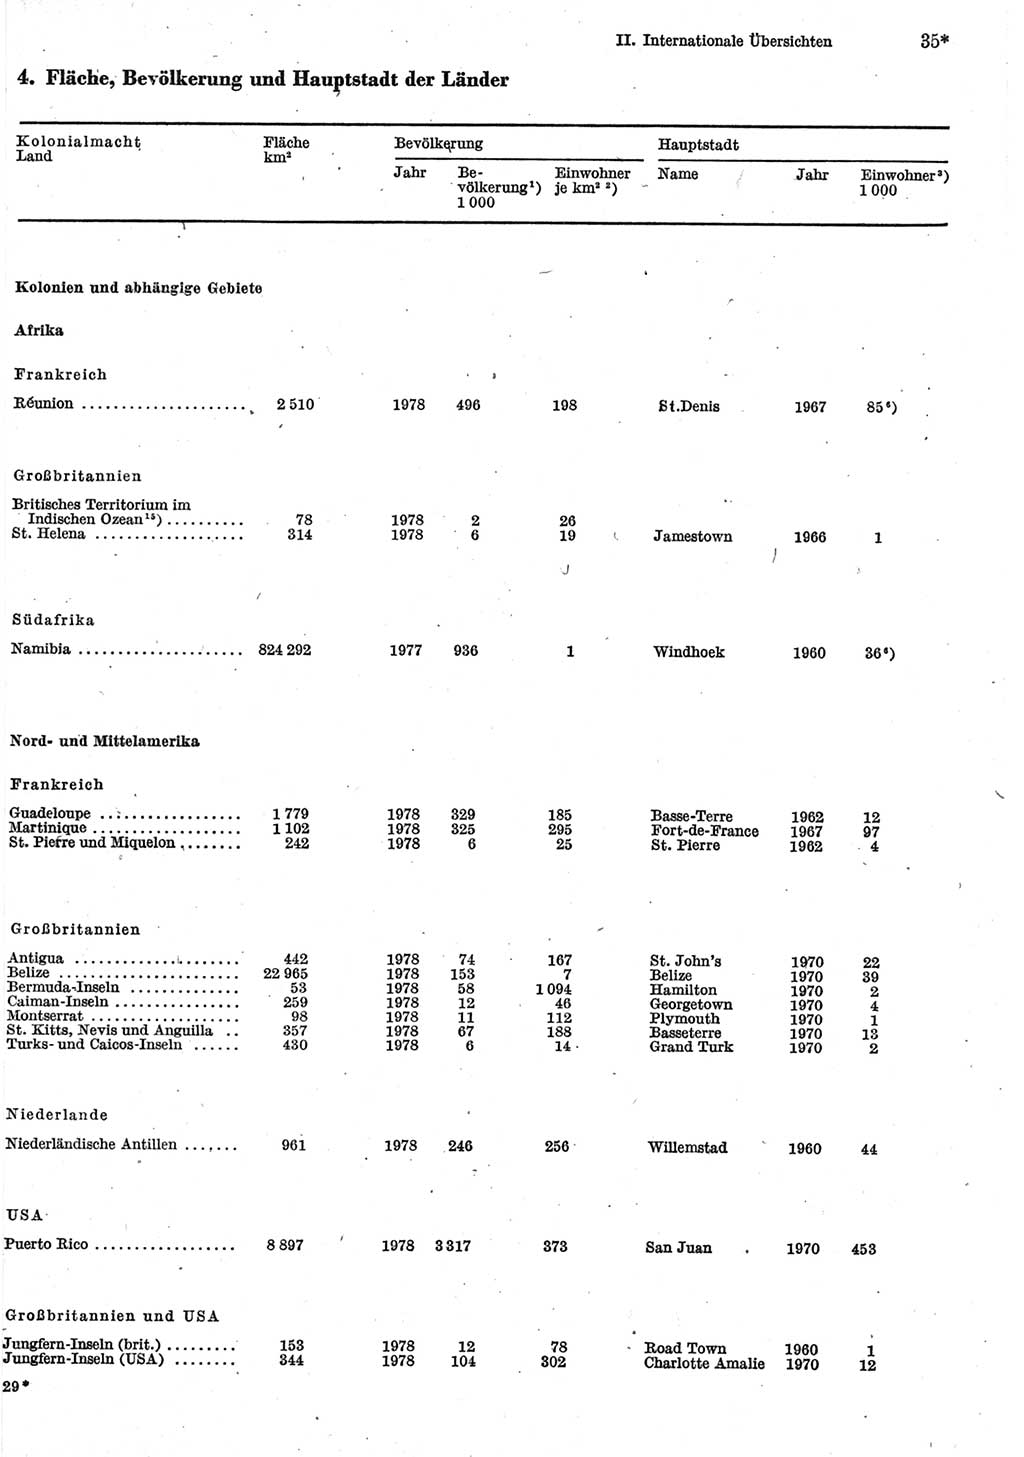 Statistisches Jahrbuch der Deutschen Demokratischen Republik (DDR) 1980, Seite 35 (Stat. Jb. DDR 1980, S. 35)